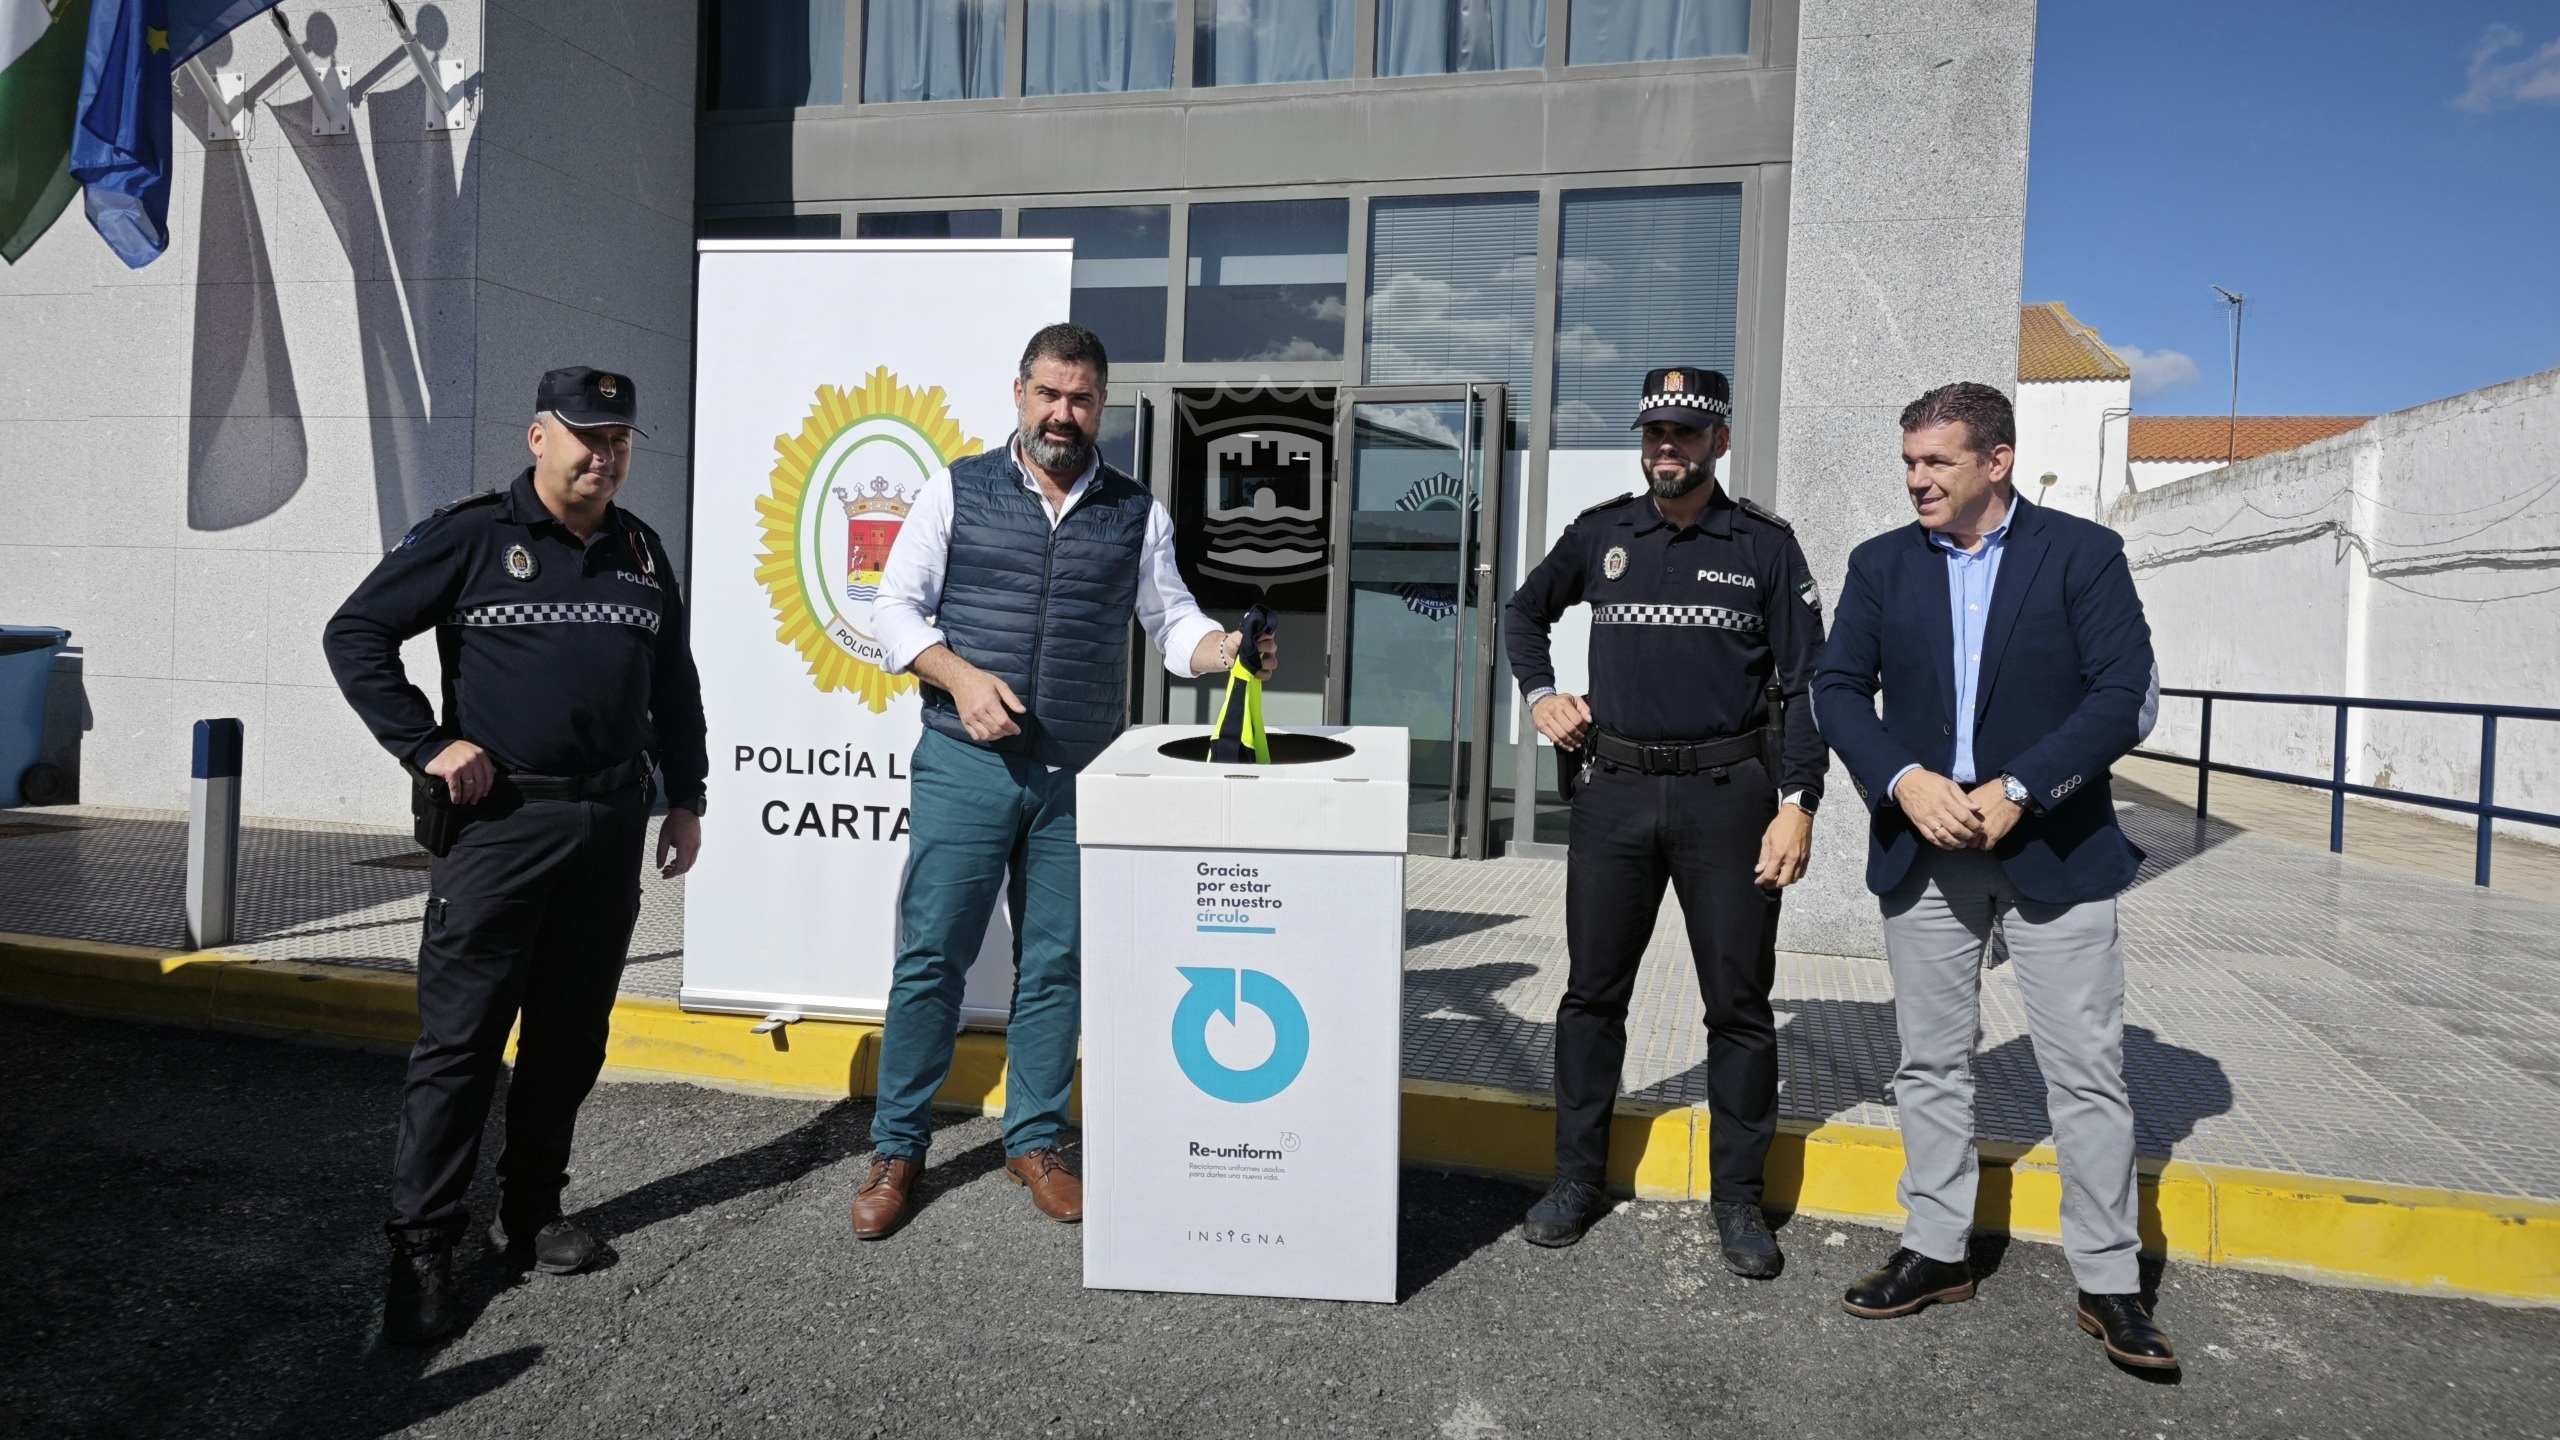 El Ayuntamiento de Cartaya instala contenedores para recoger y reciclar los uniformes de los policías locales